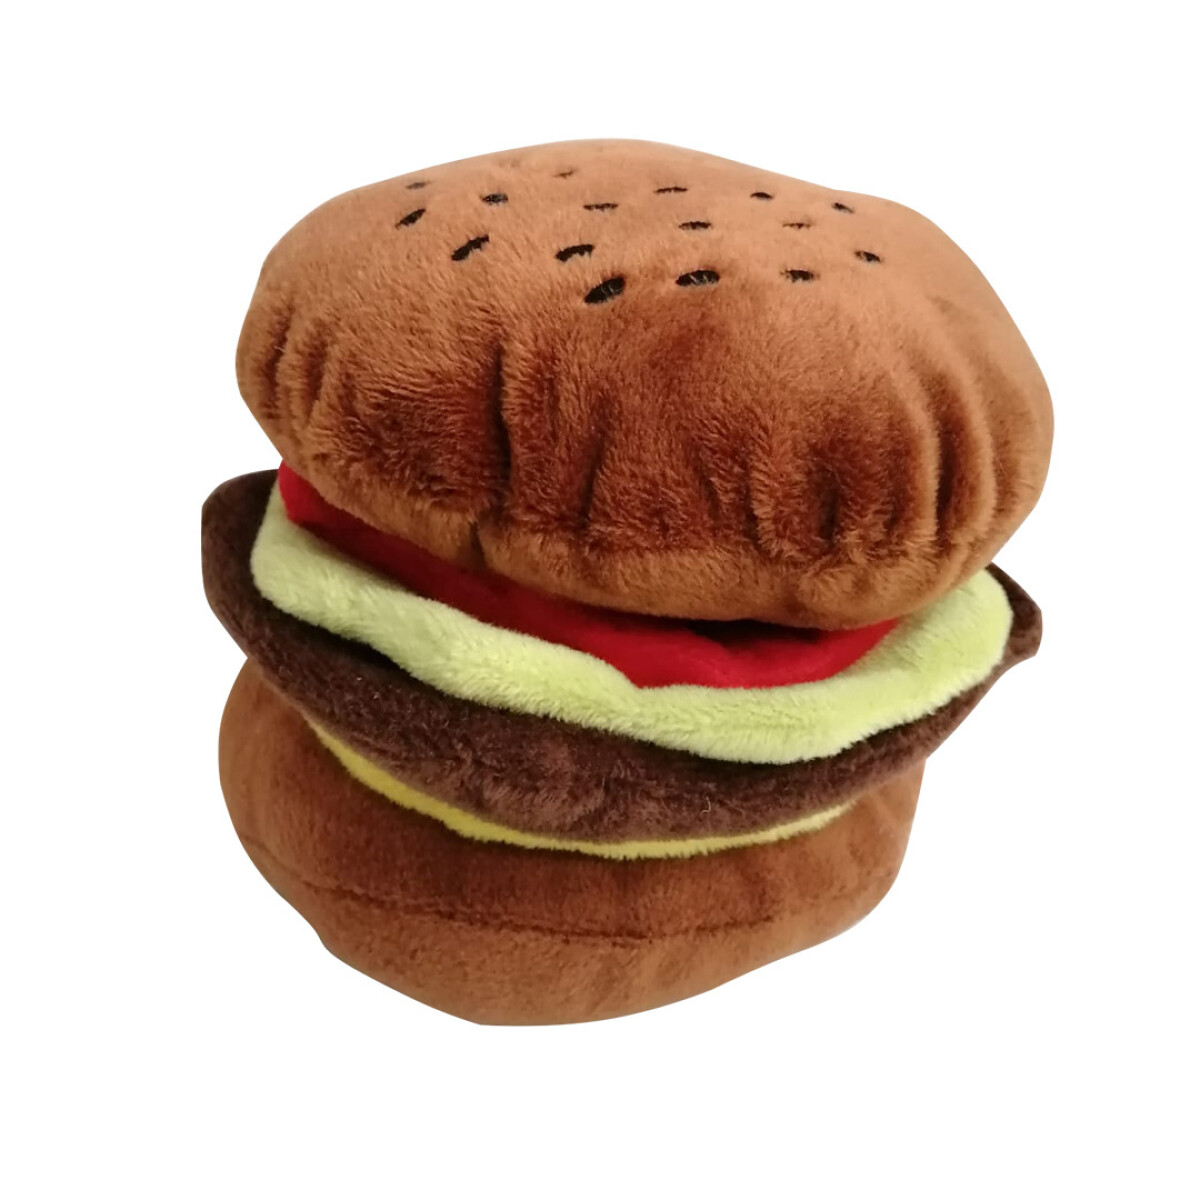 Juguete mascota fast food - hamburguesa 